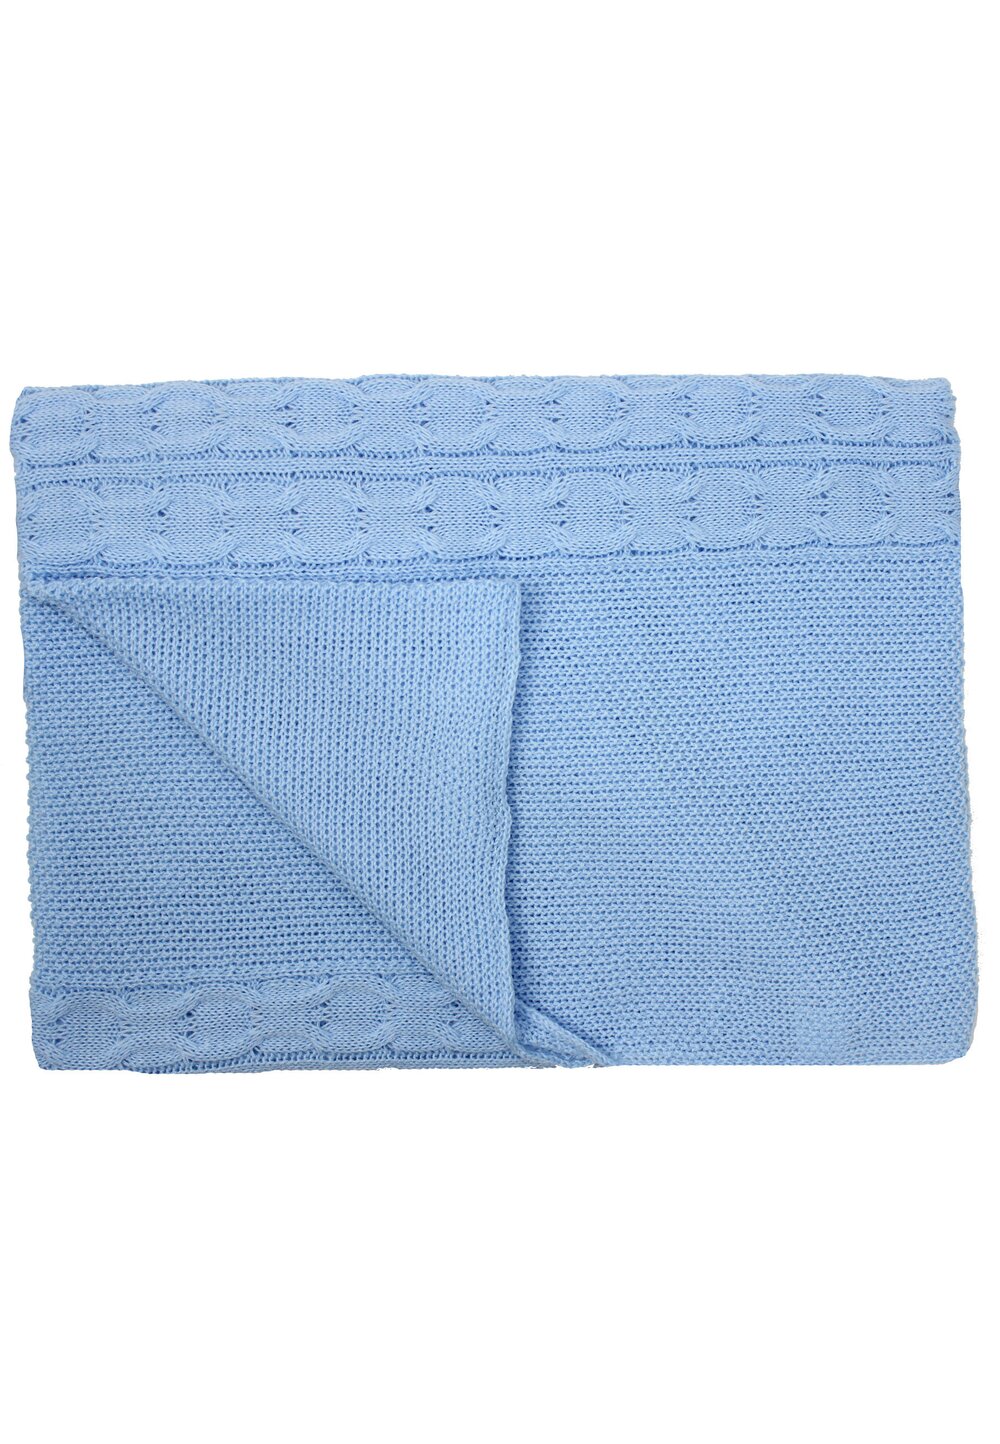 Paturica tricotata, Eva, albastra, 90x90cm 90x90cm